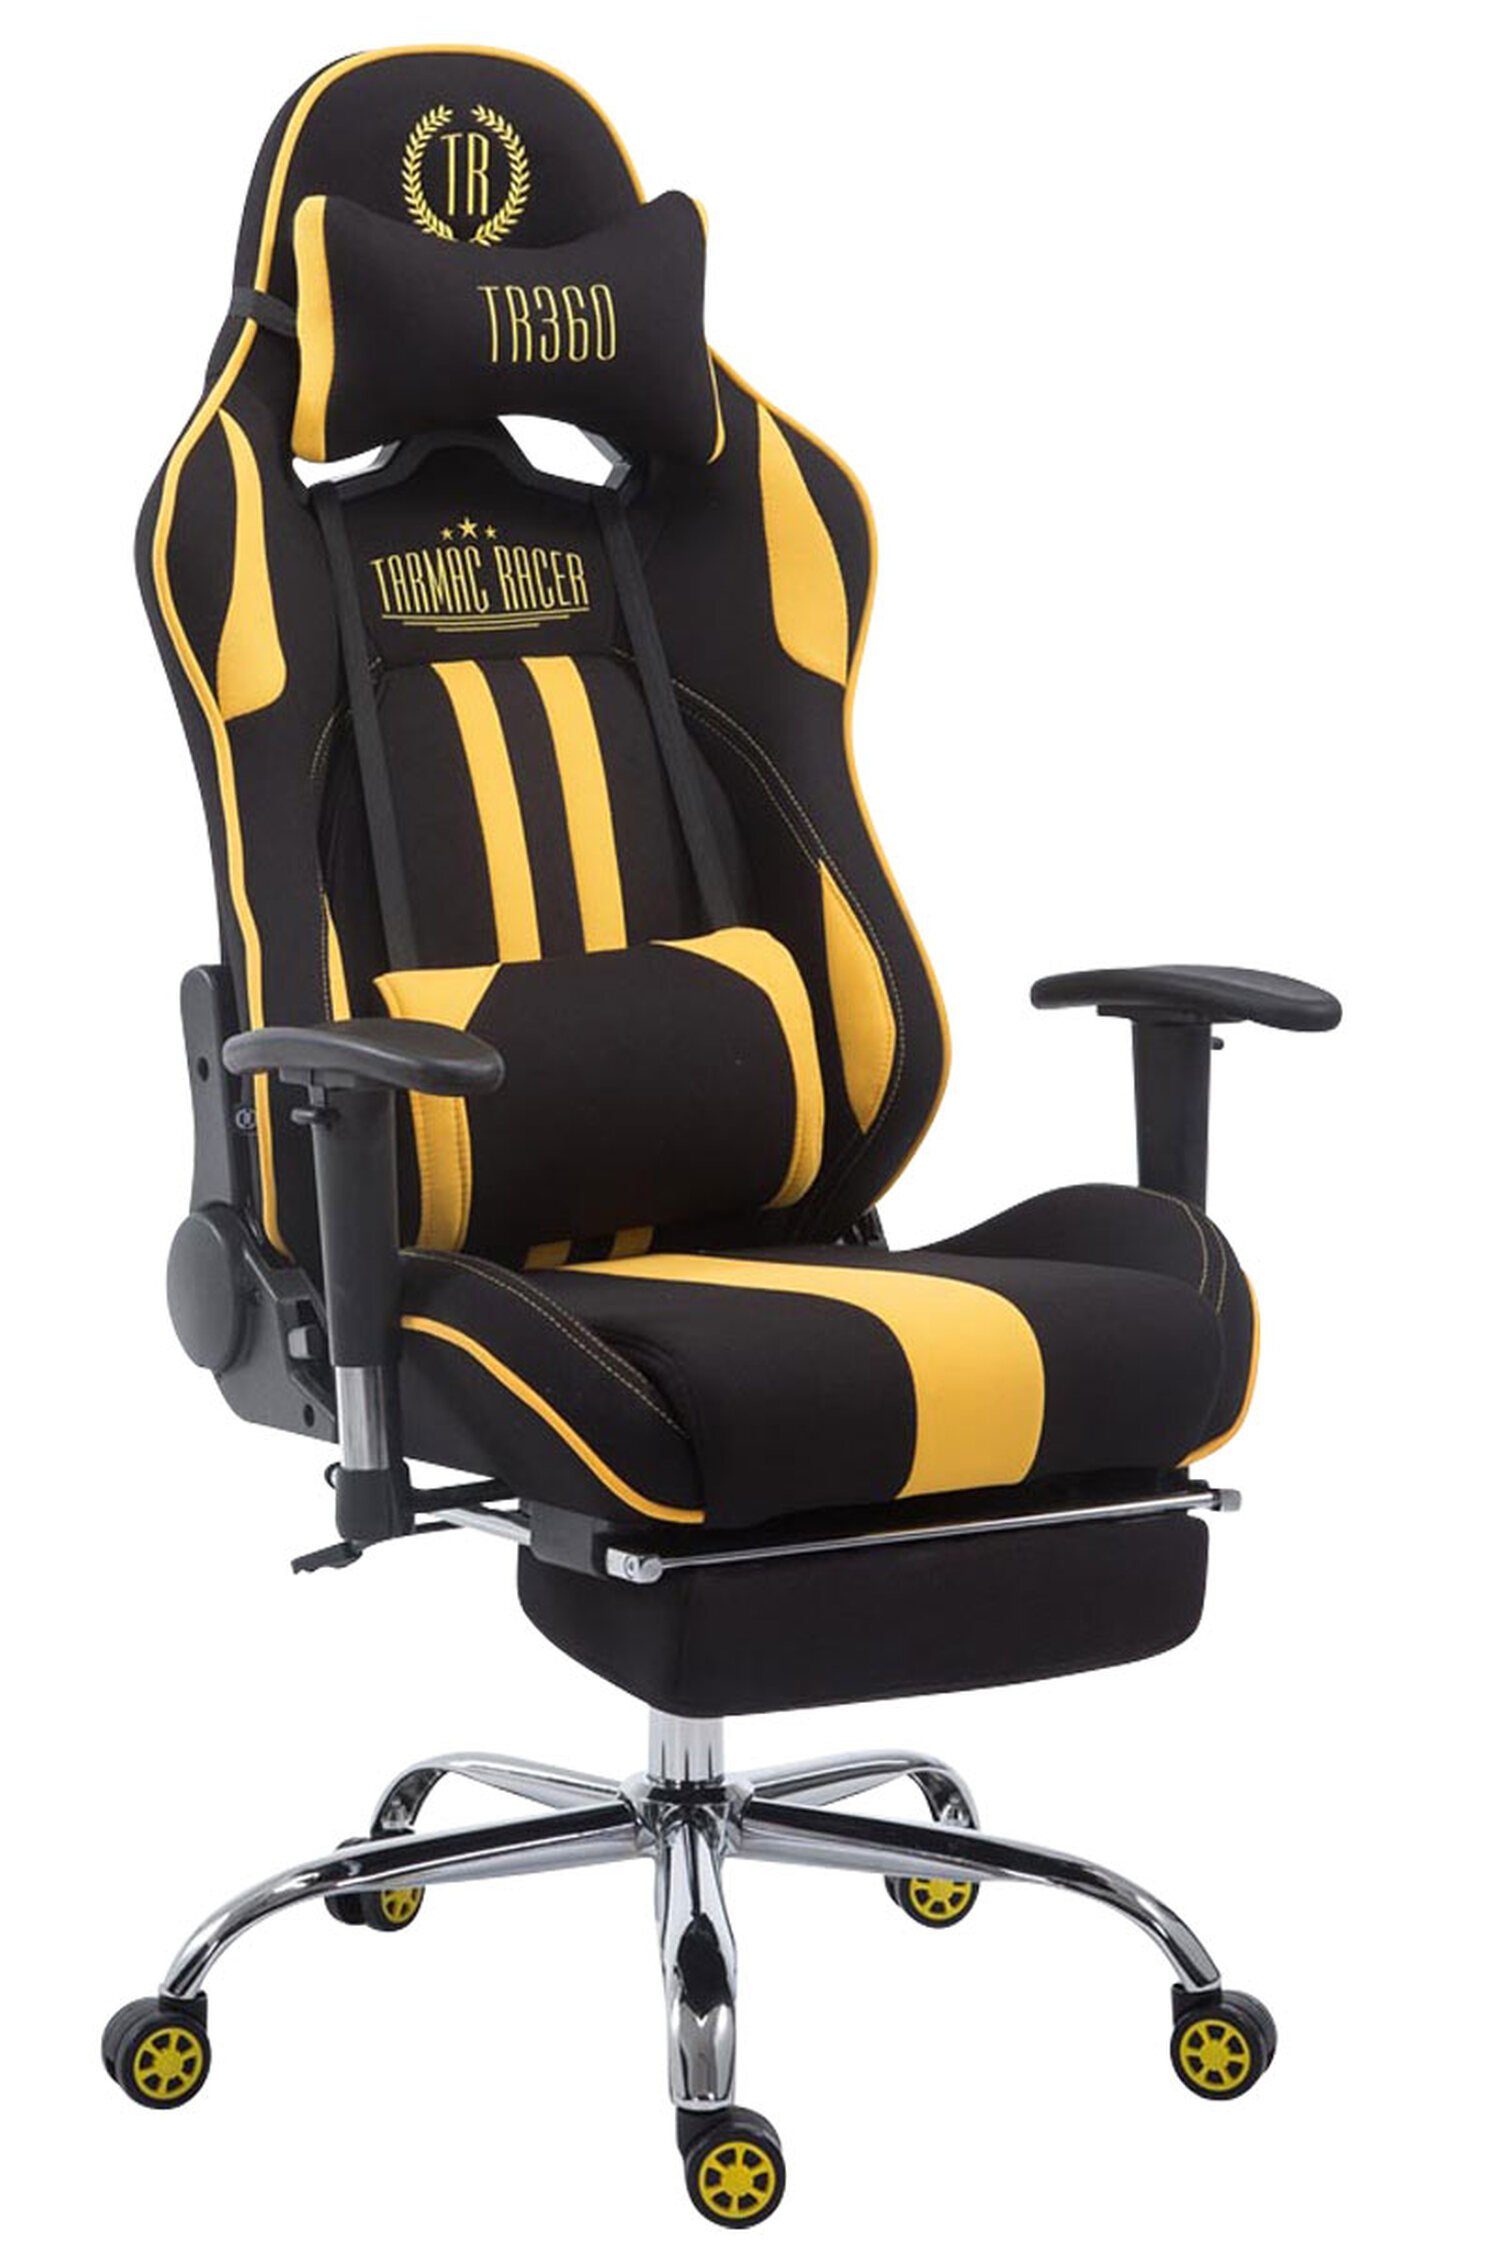 TPFLiving Gaming-Stuhl Limitless mit bequemer Rückenlehne - höhenverstellbar und 360° drehbar (Schreibtischstuhl, Drehstuhl, Gamingstuhl, Racingstuhl, Chefsessel), Gestell: Metall chrom - Sitzfläche: Stoff schwarz/gelb